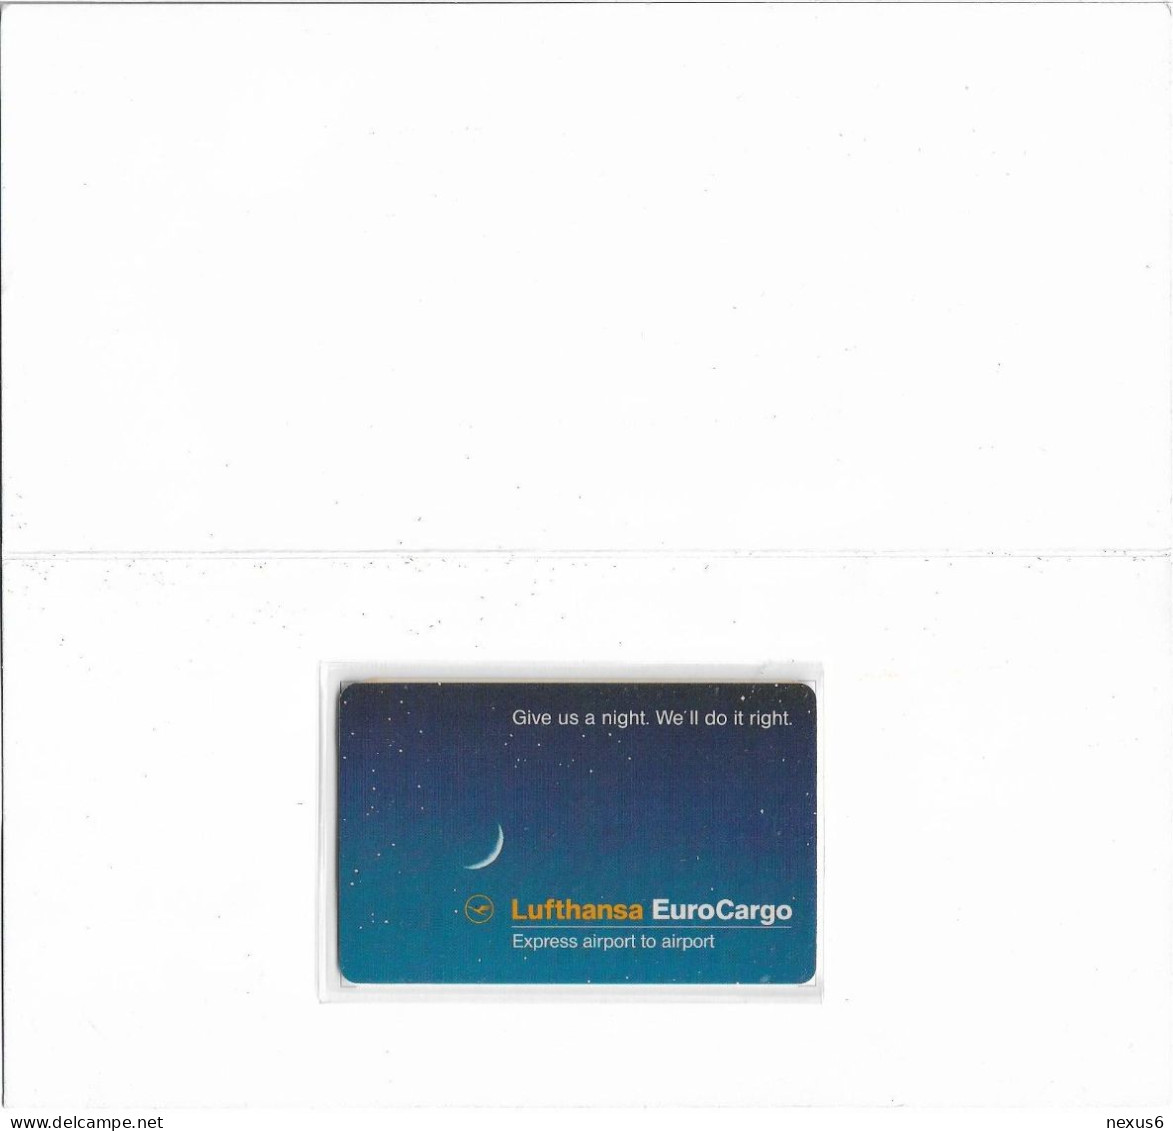 Germany - Sprint - Lufthansa EuroCargo, 11.1993, Remote Mem. 10U, 5.100ex, Mint In Folder - Cellulari, Carte Prepagate E Ricariche